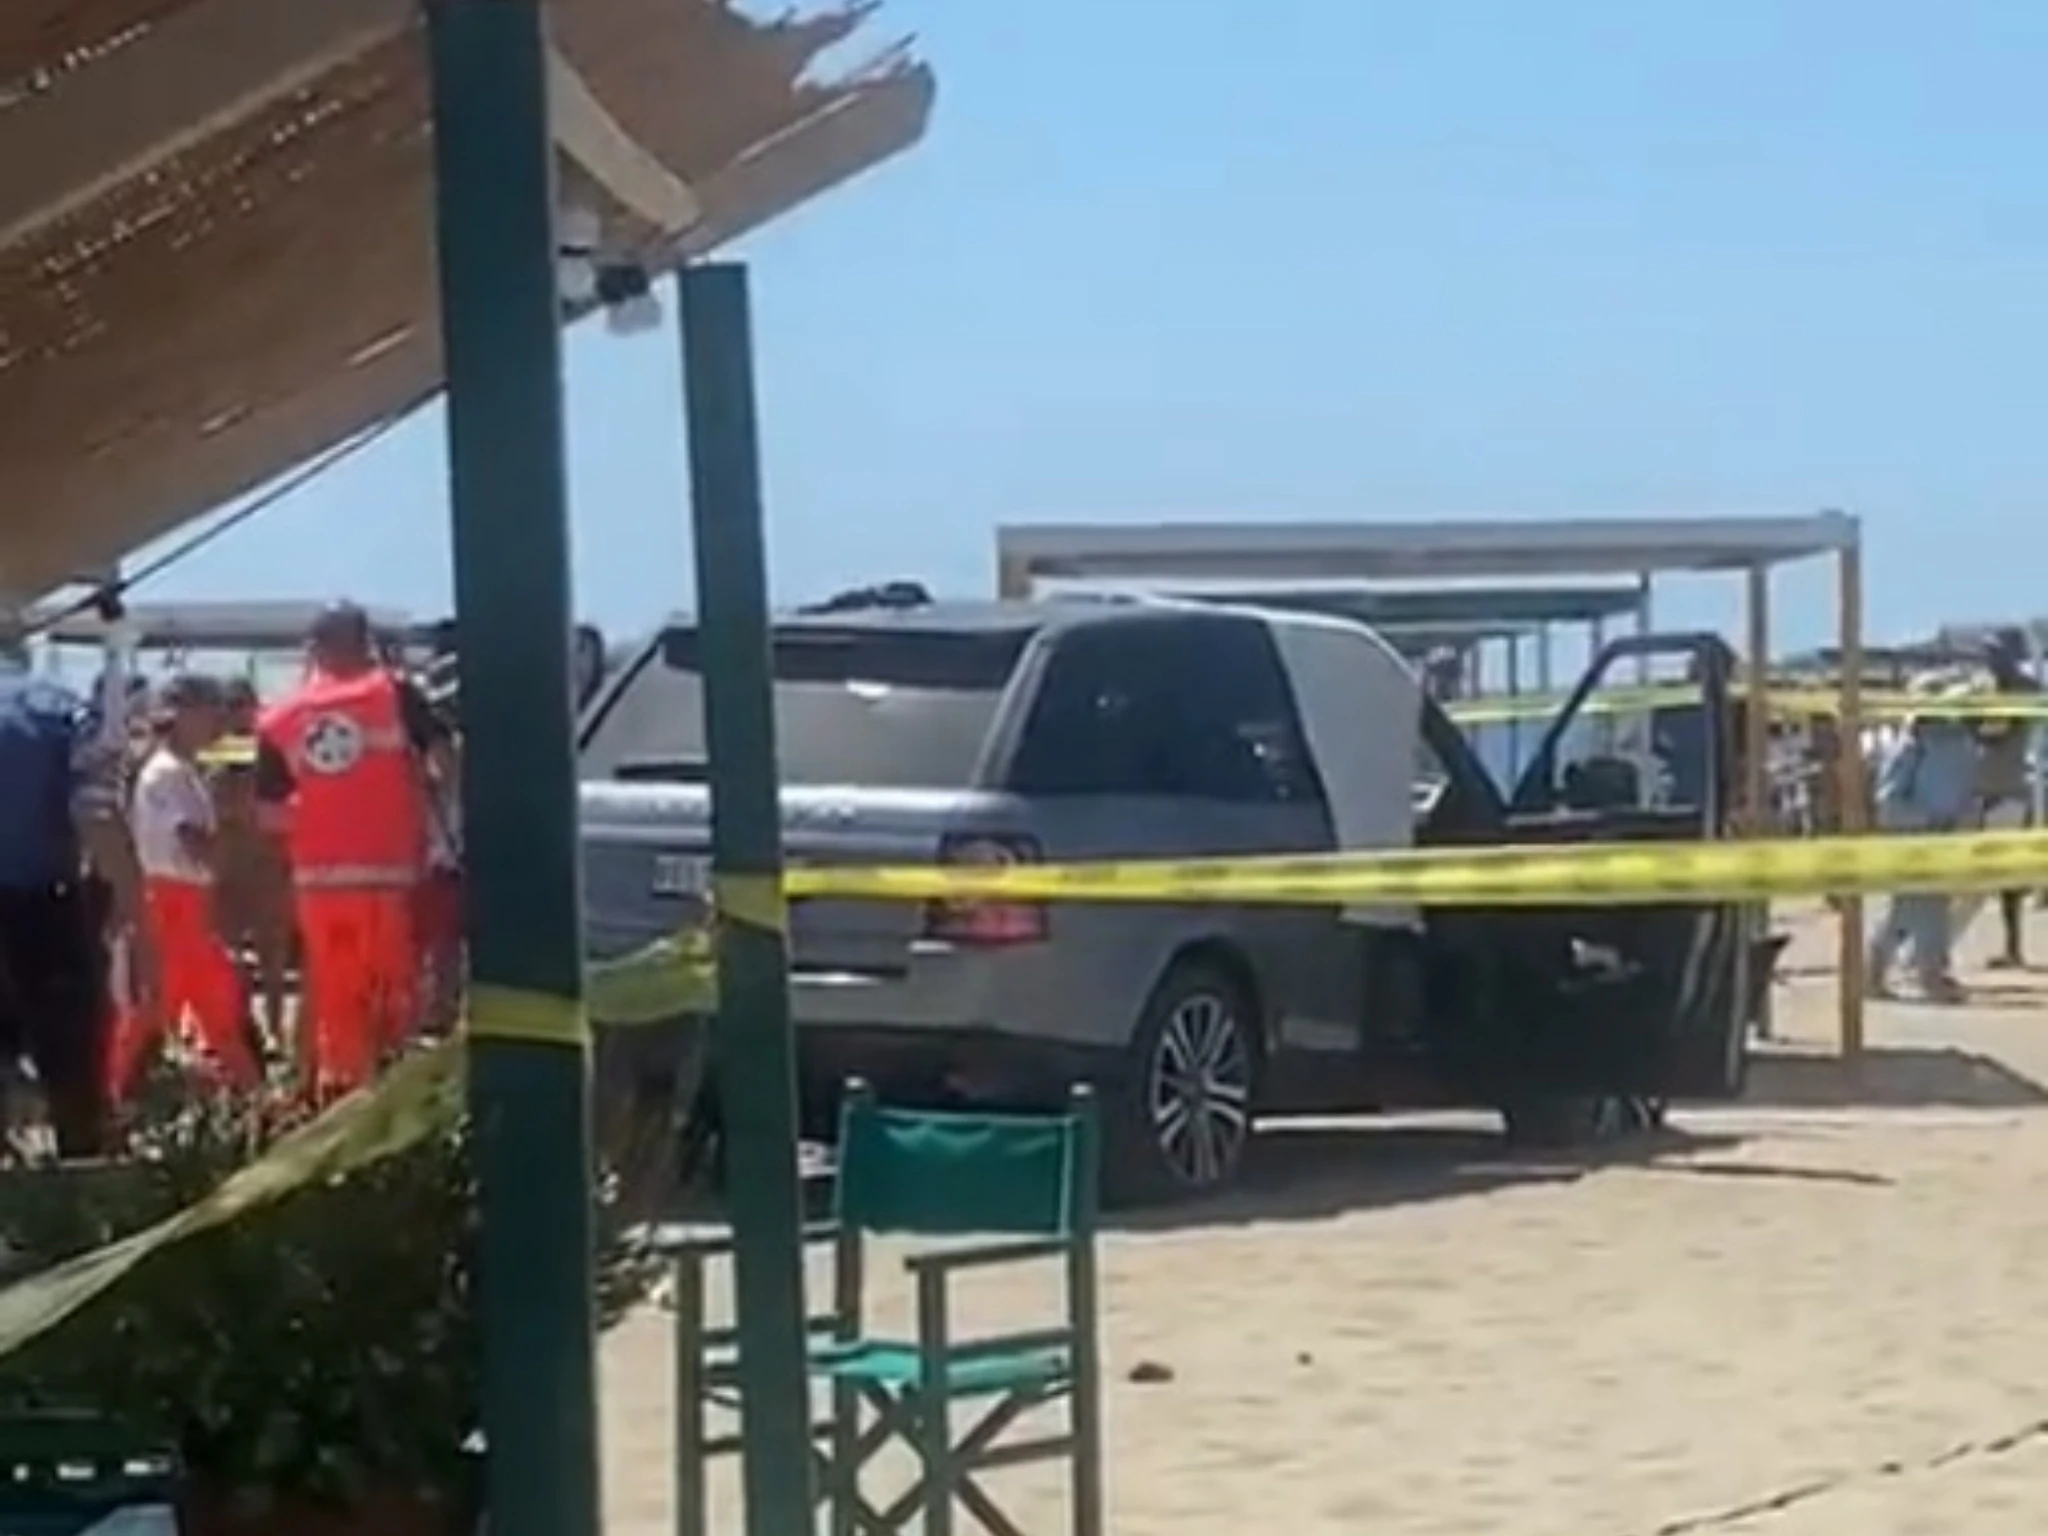 Tragedia sfiorata a Forte dei Marmi, SUV fuori controllo invade la spiaggia. Poche ore dopo, il fenomeno si ripete: paura tra i bagnanti